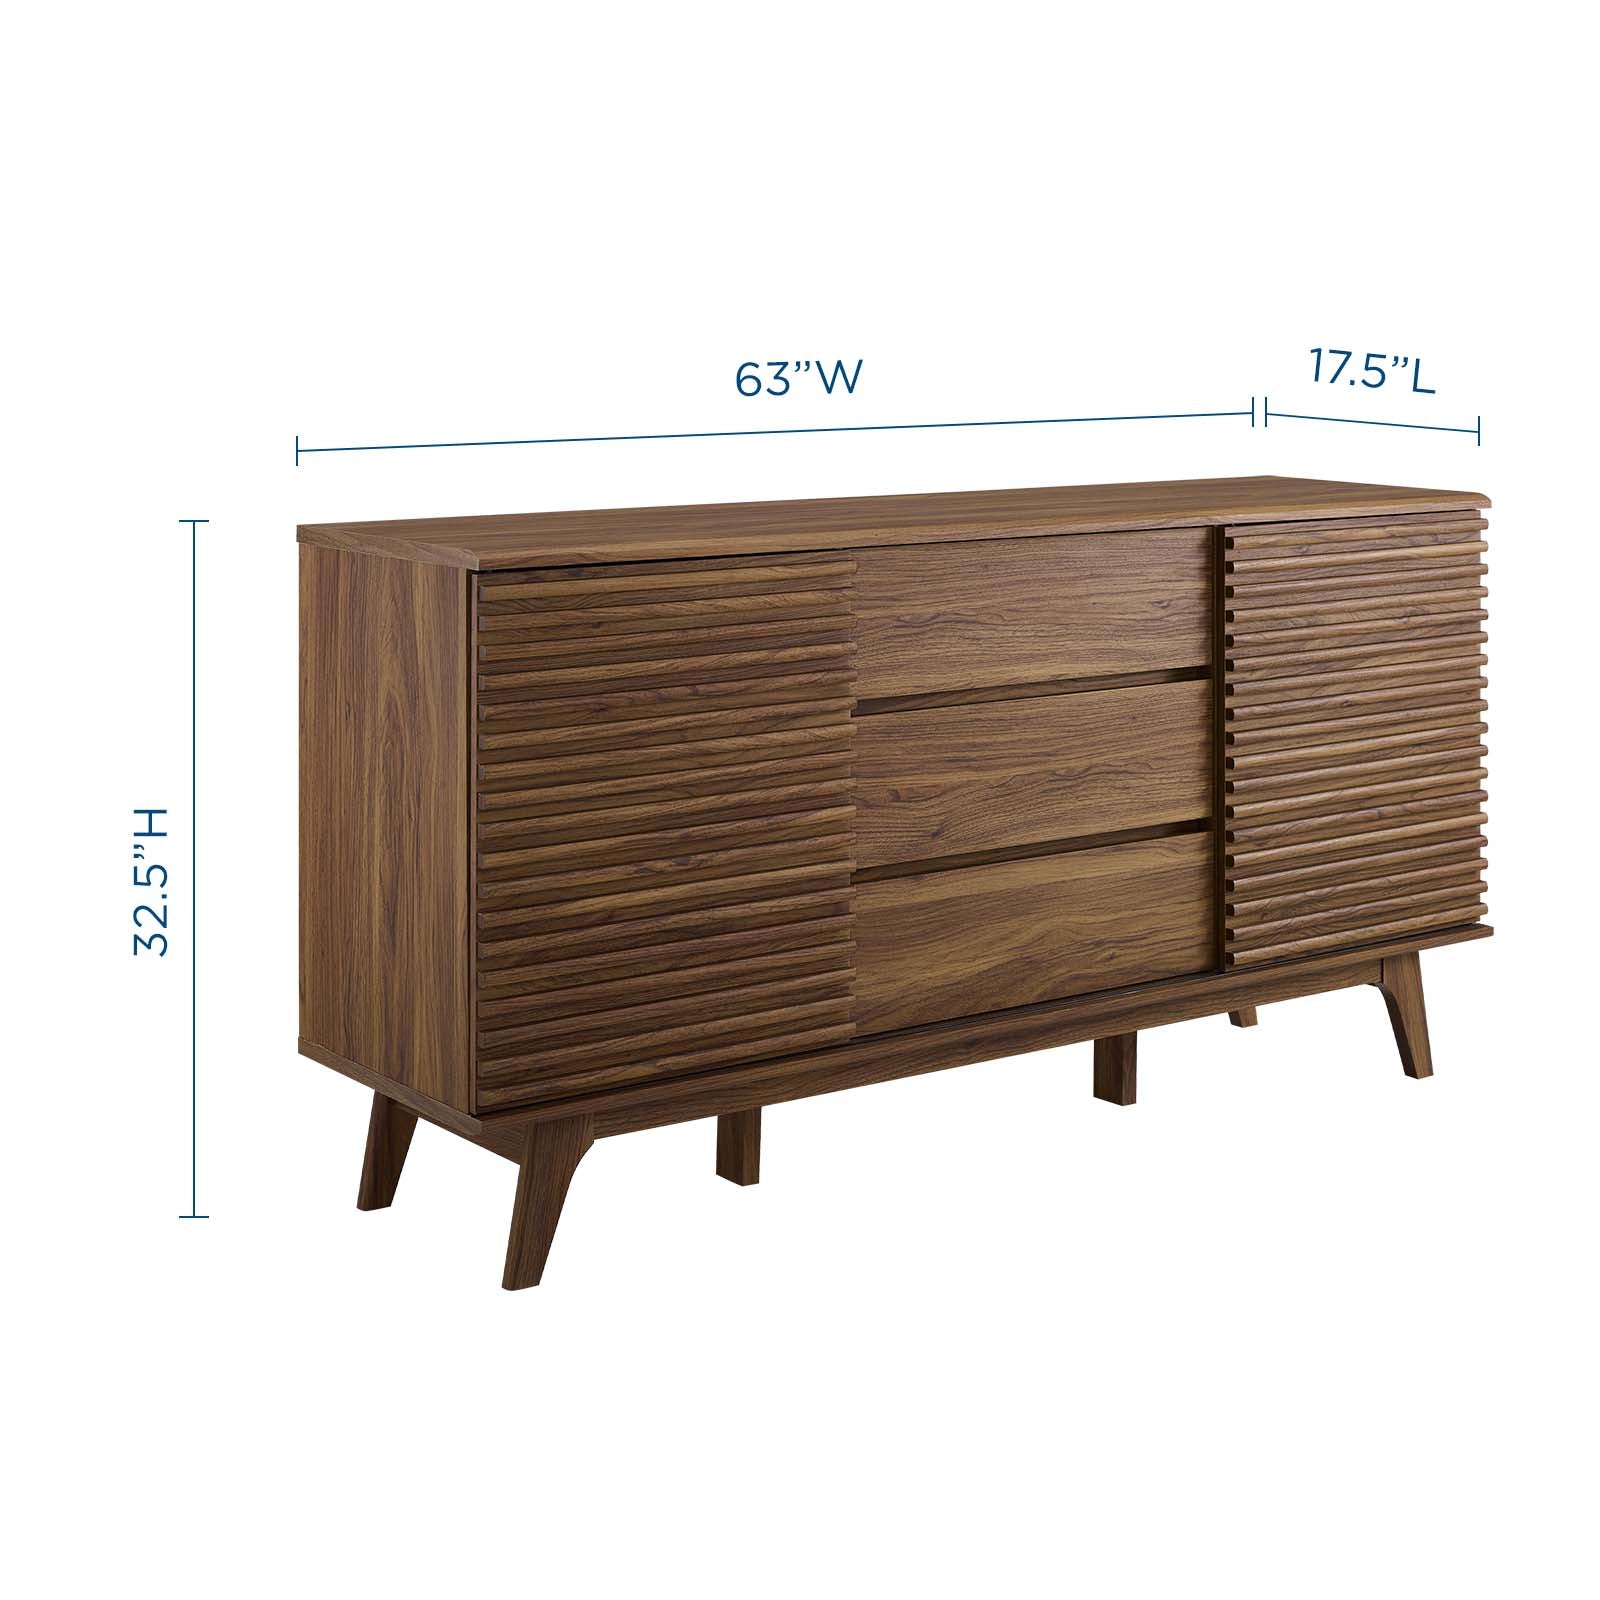 Modway Buffets & Cabinets - Render Sideboard Buffet Table Walnut